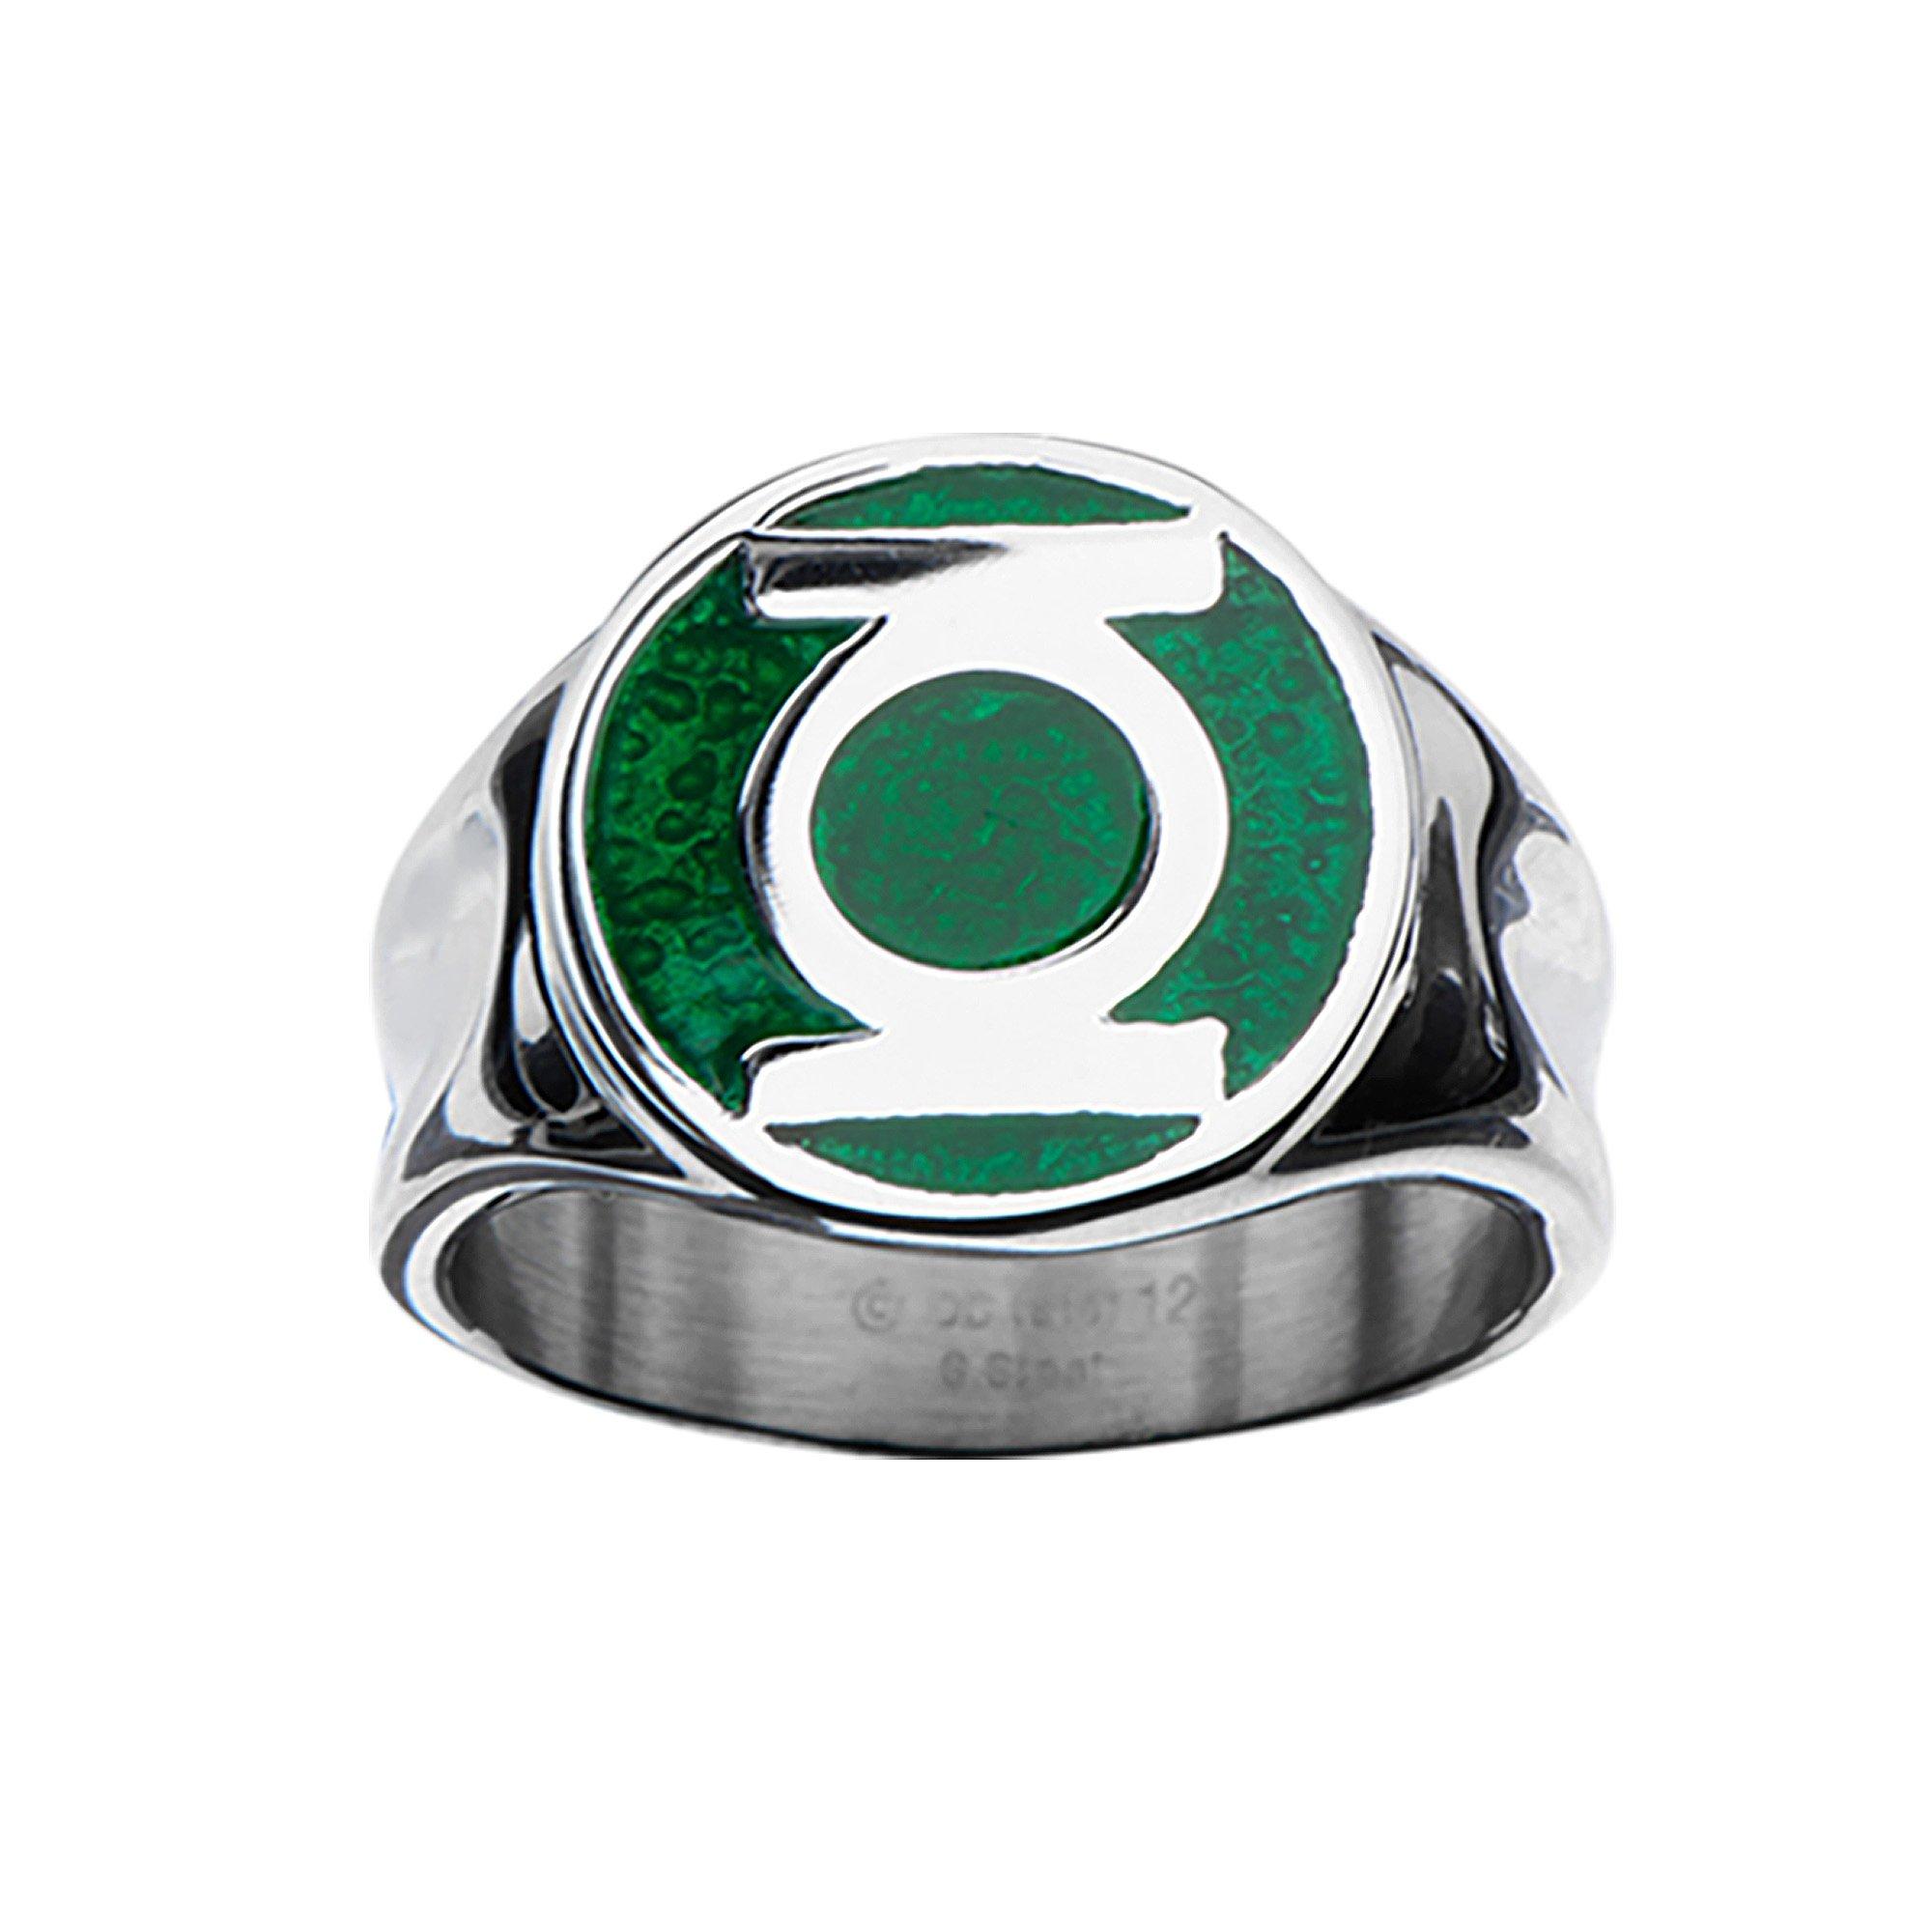 Green Lantern Symbol Stainless Steel Ring-Size 10 